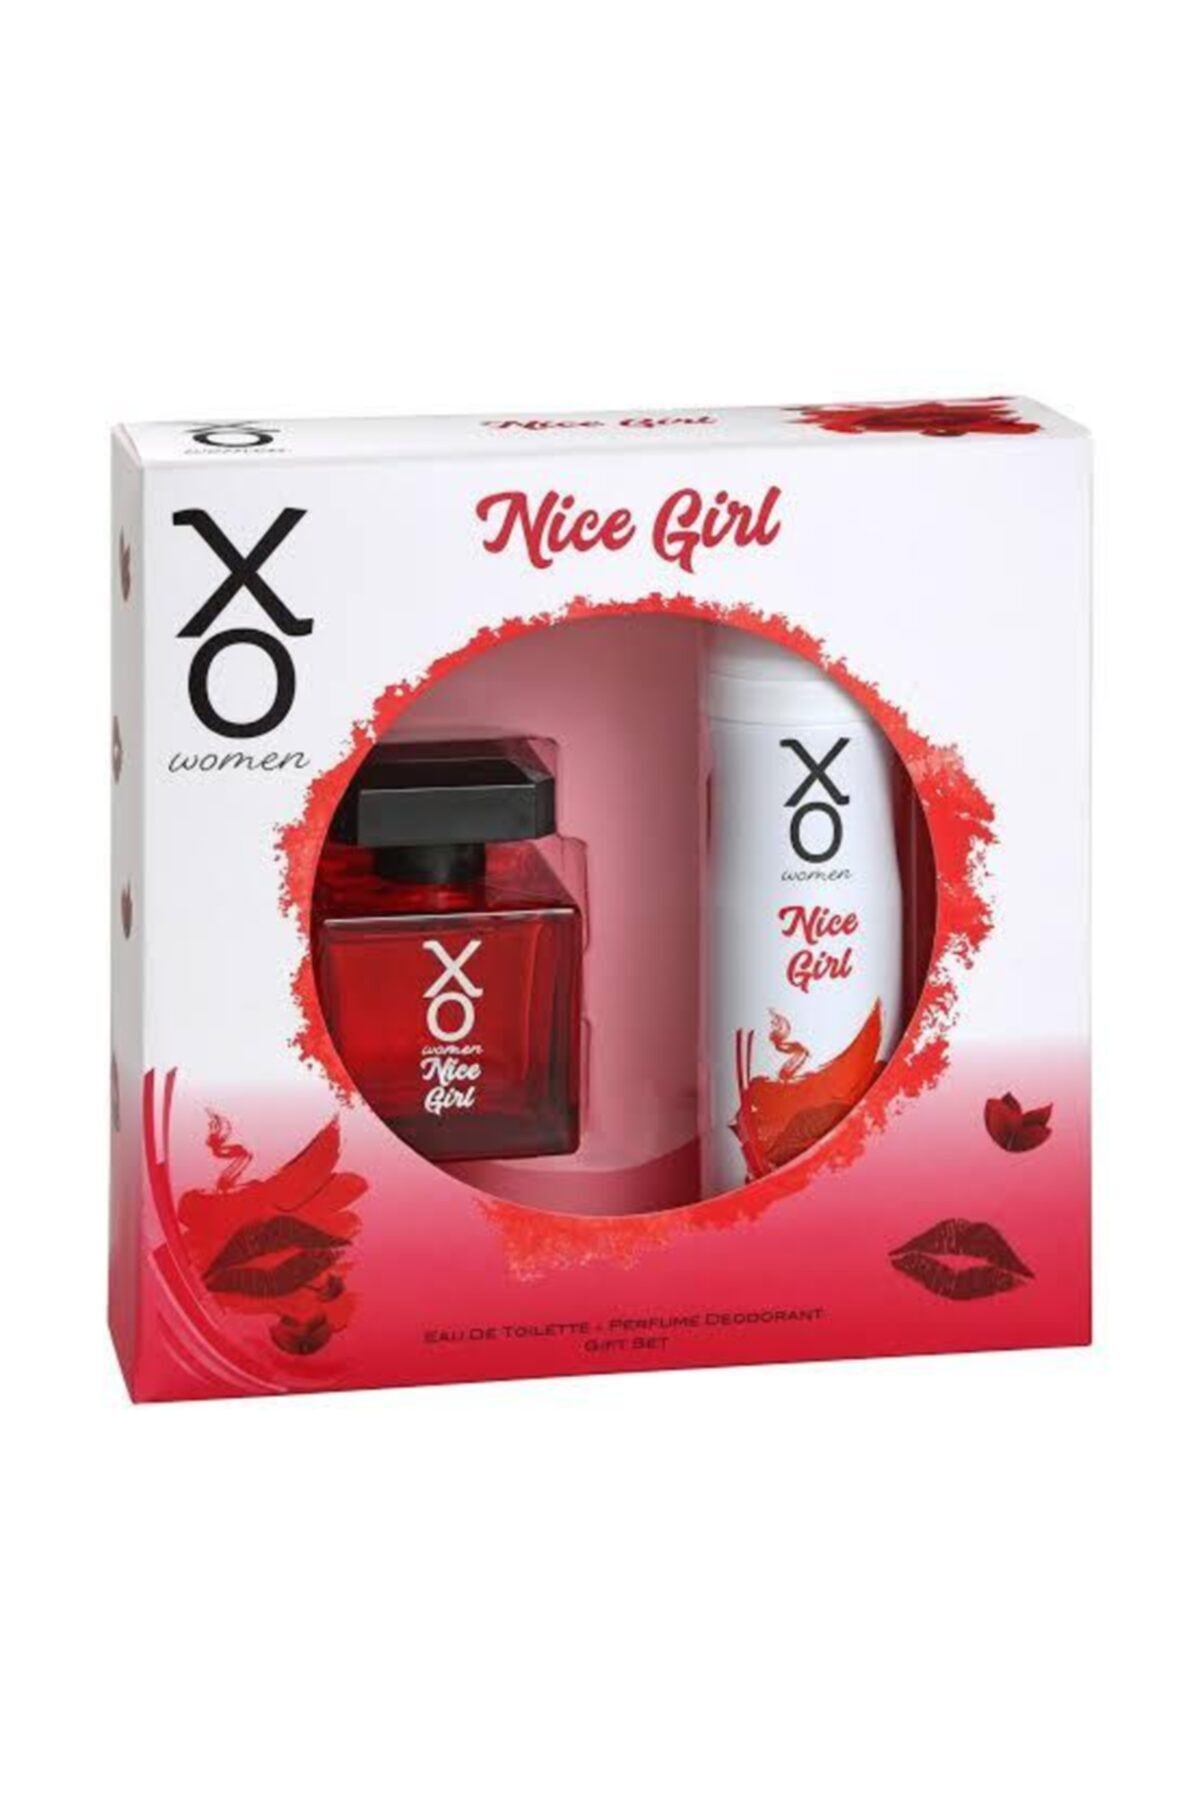 Xo Nice Girl Kadın 100 ml Edt ve 125 ml Deodorant Parfüm Seti 273783838382